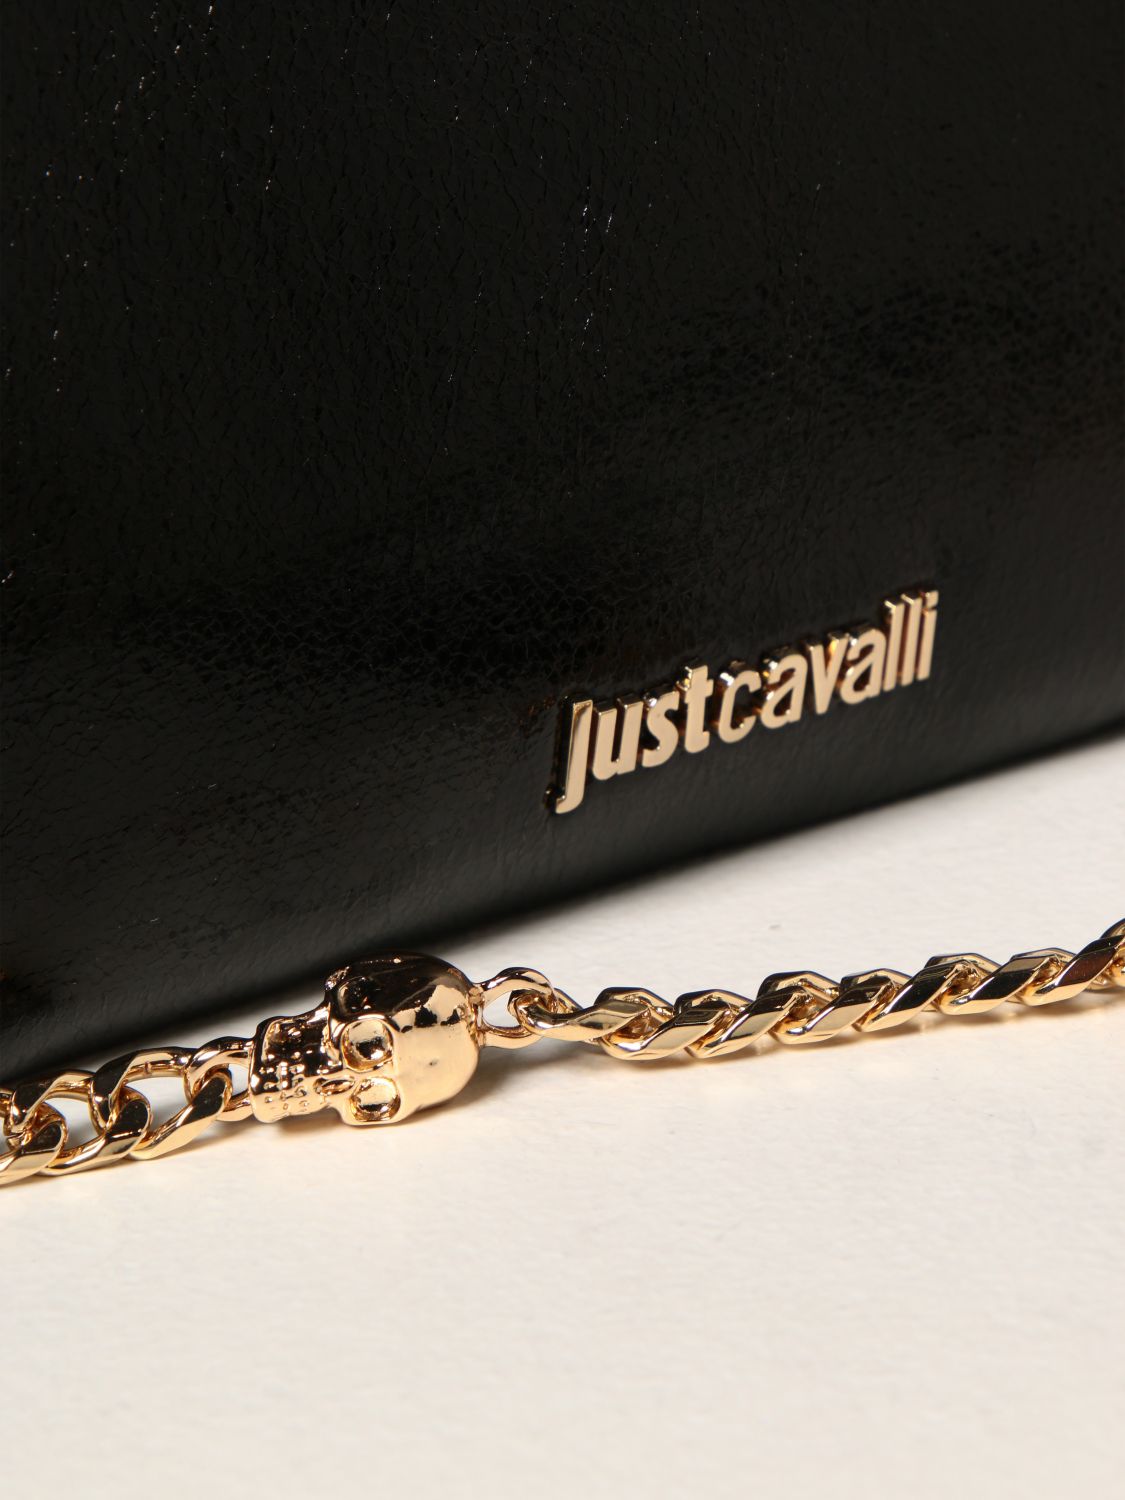 JUST CAVALLI: Tote bags women Roberto Cavalli | Crossbody Bags Just Cavalli Women Black | Crossbody Bags Just GIGLIO.COM